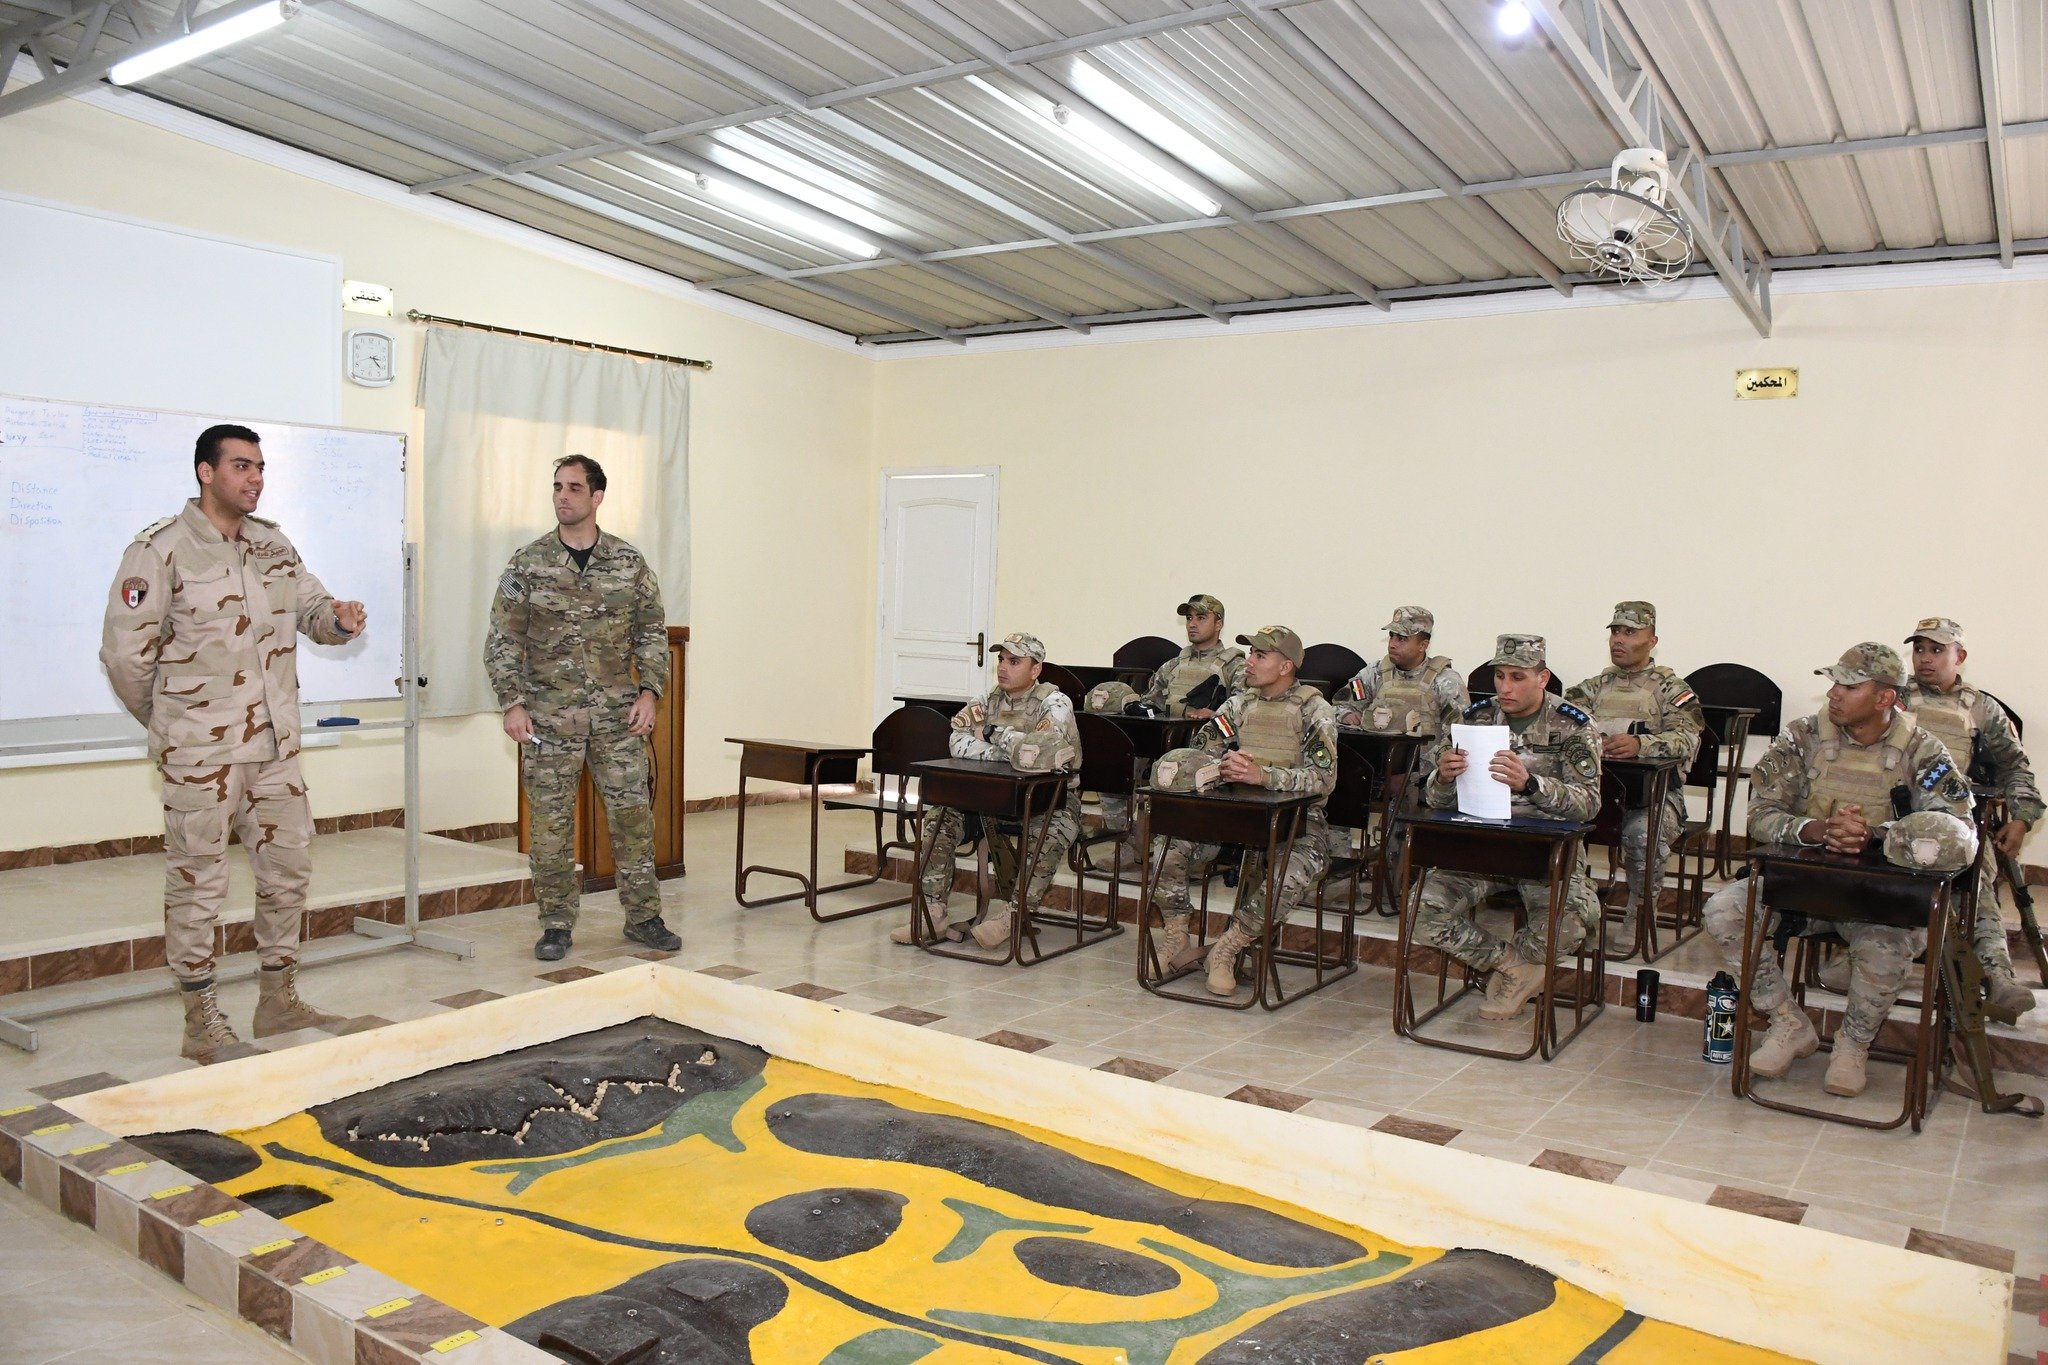 ختام فعاليات التدريب المشترك «SOF02» بين القوات الخاصة المصرية والأمريكية